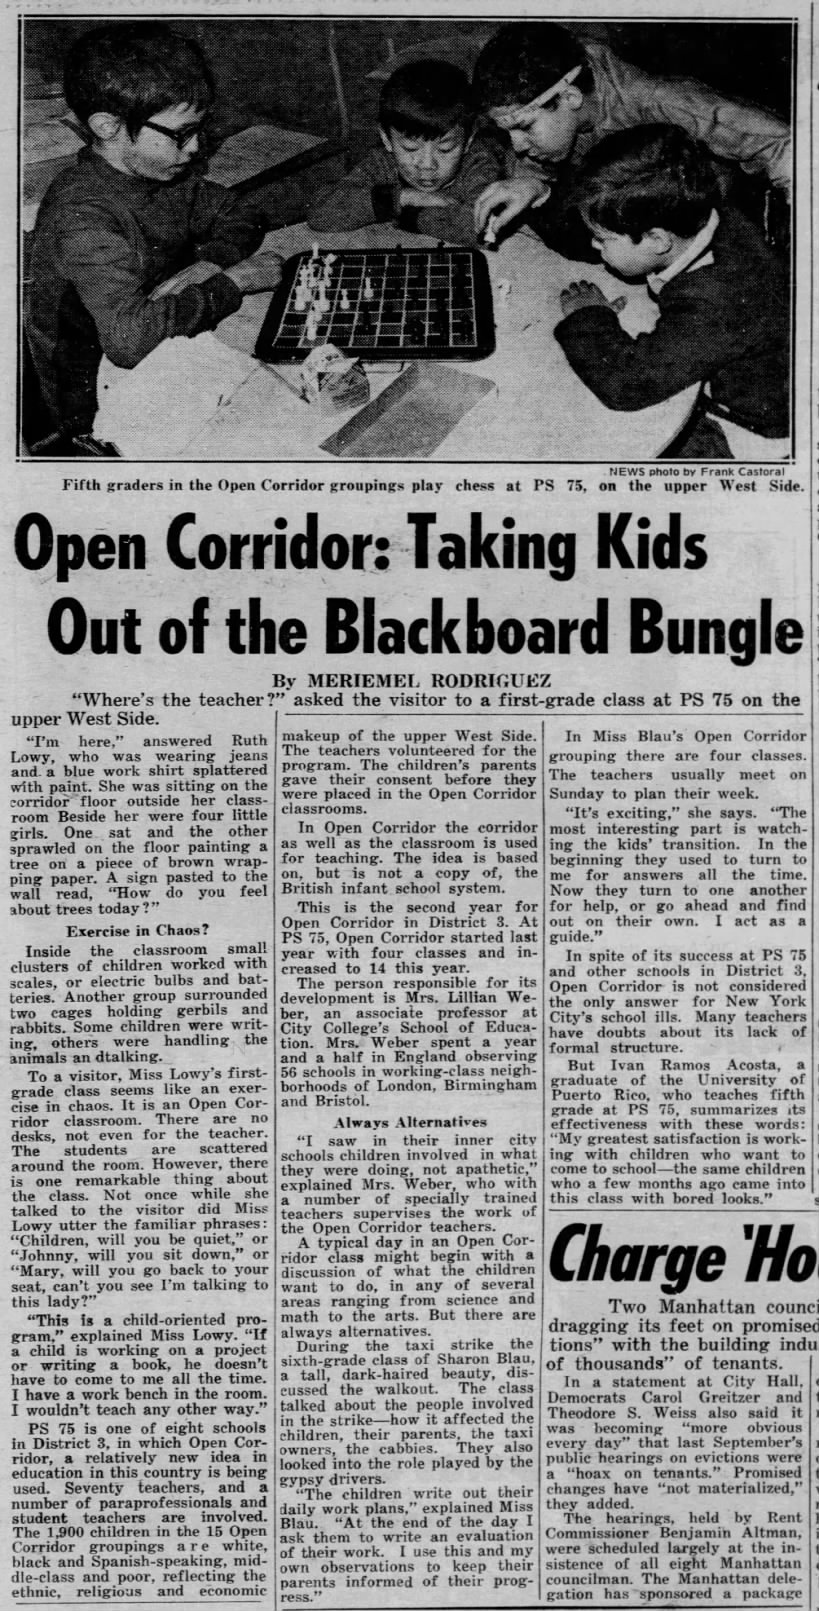 Open Corridor: Taking Kids Out of the Blackboard Bungle